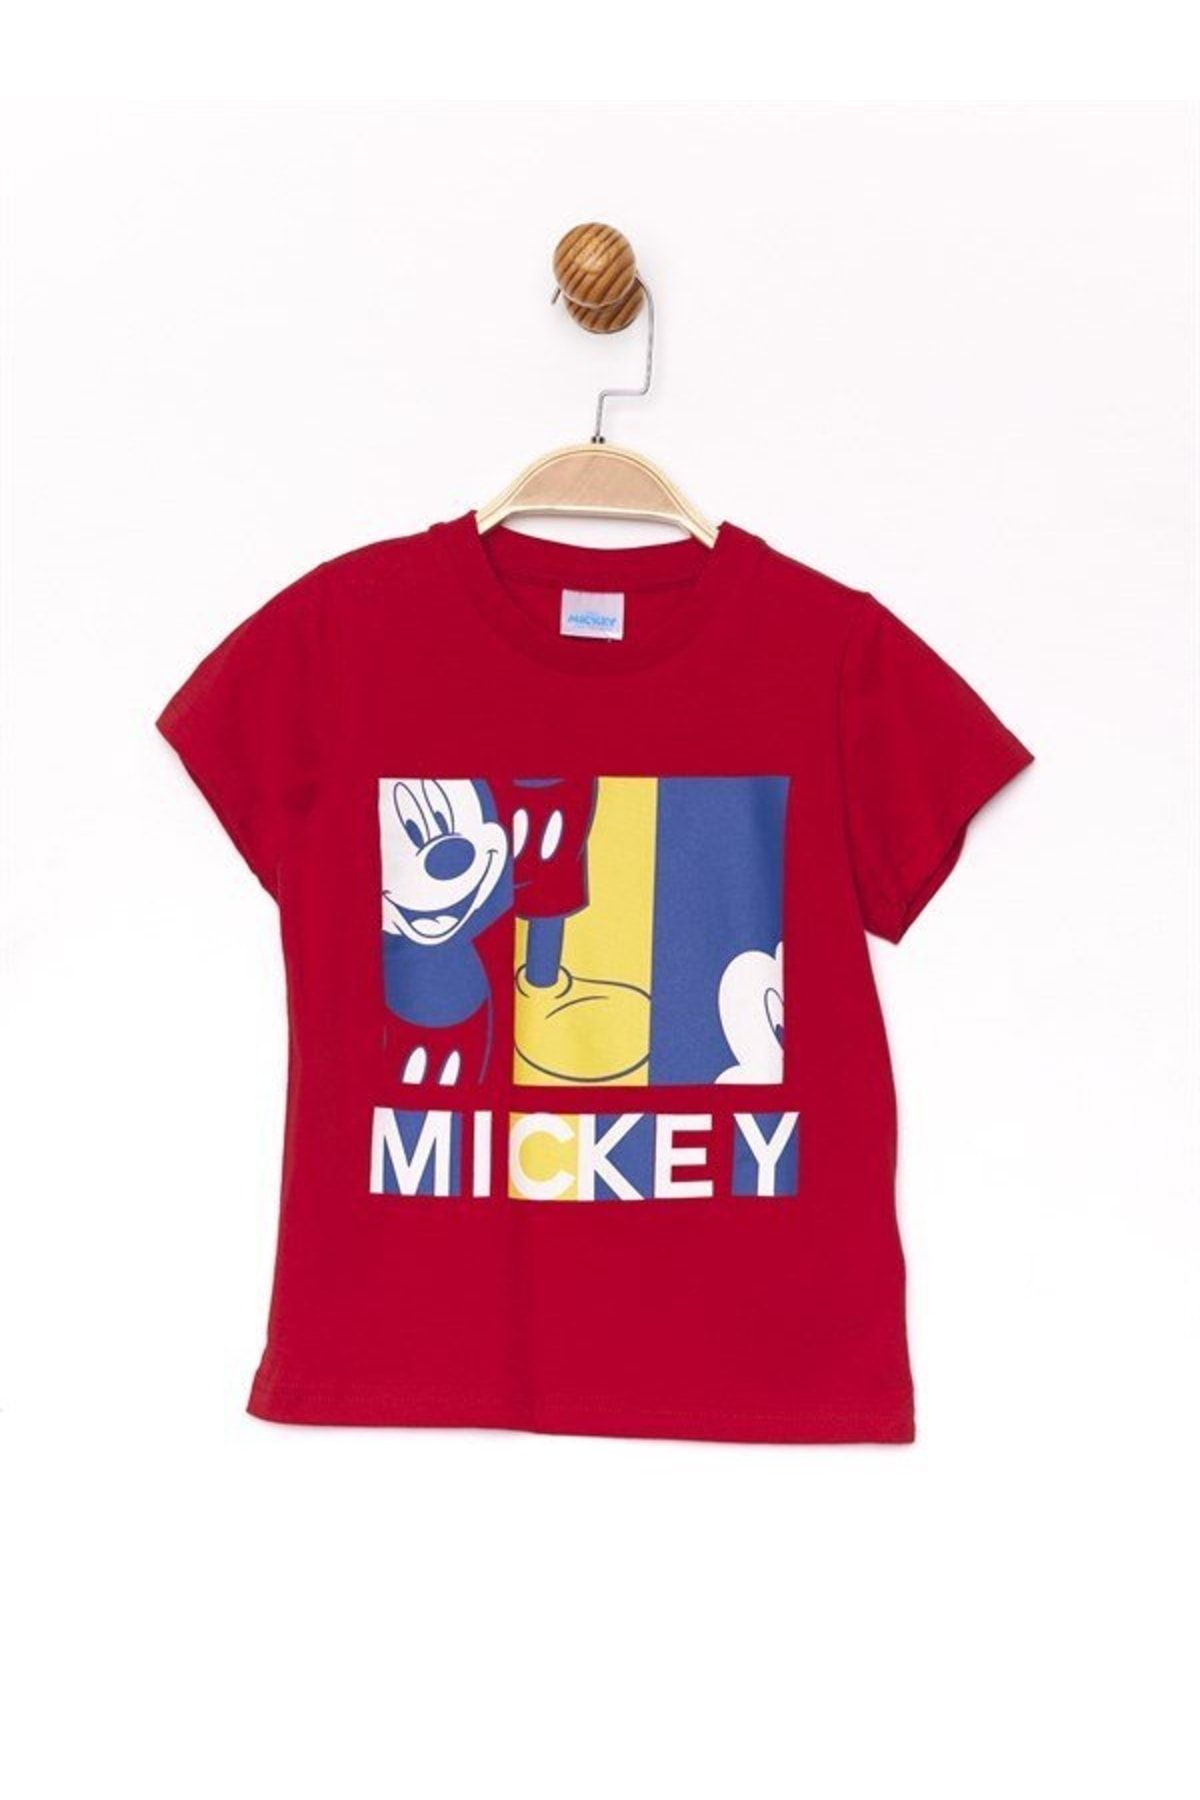 DİSNEY Mickey Mouse Lisanslı Kırmızı Mickey Baskılı Çocuk Tişört